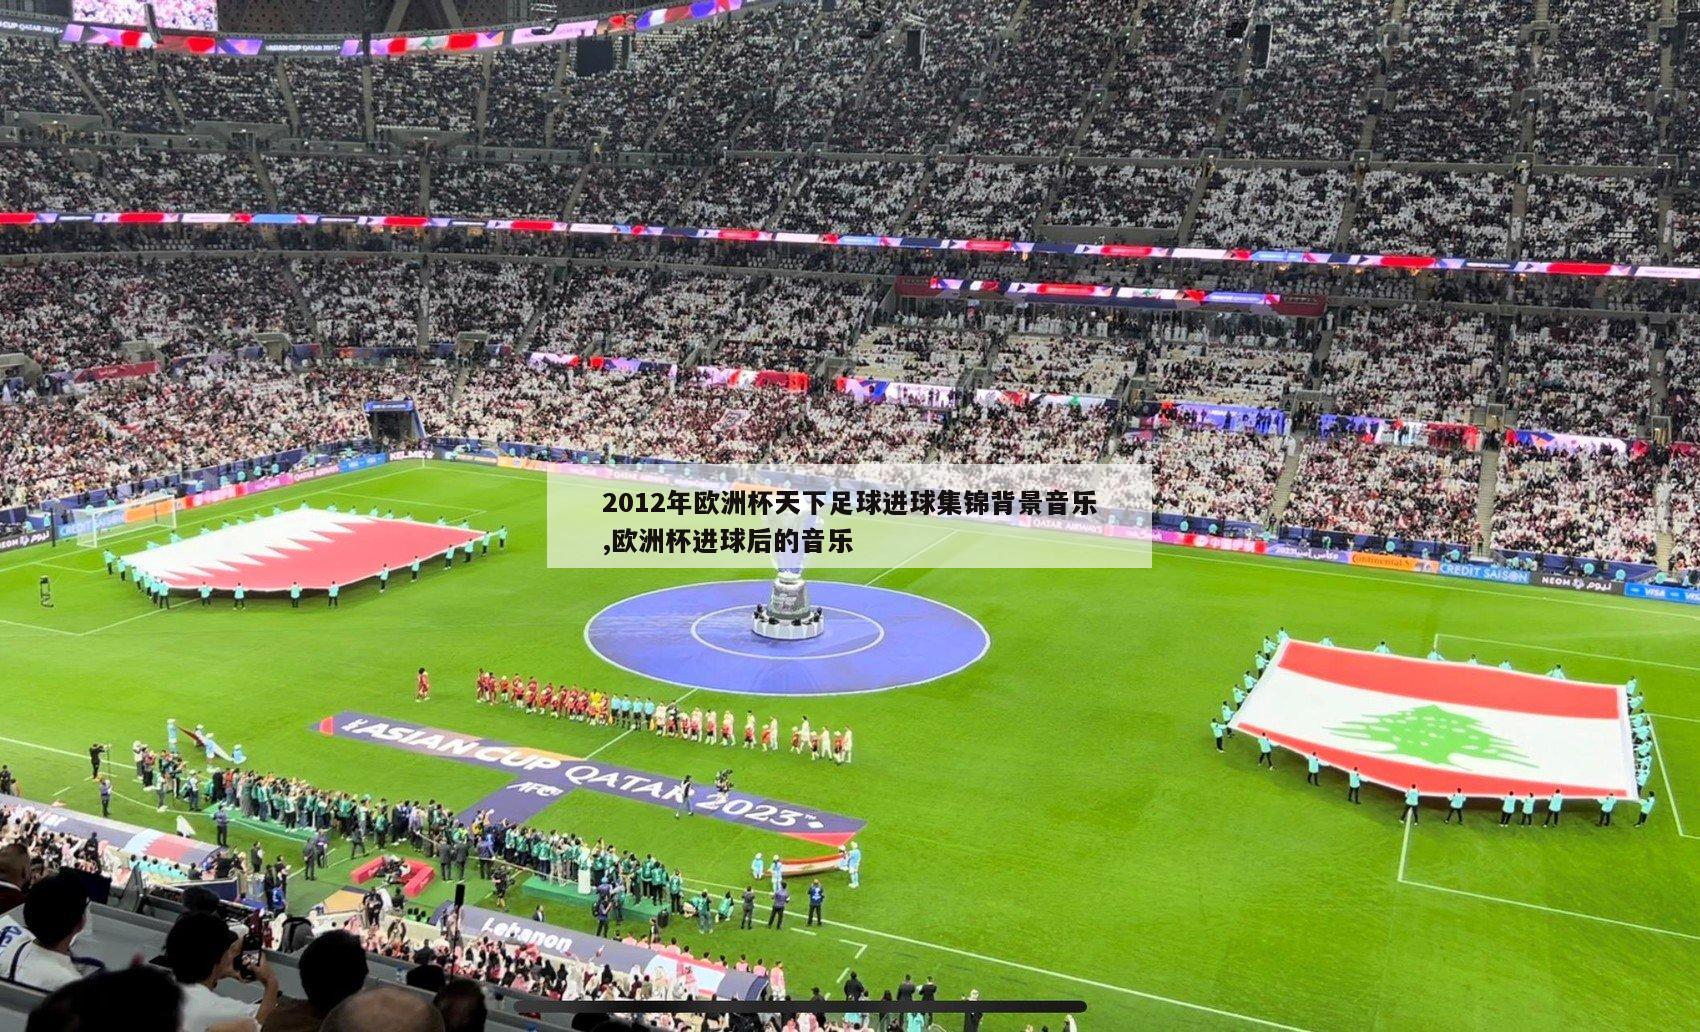 2012年欧洲杯天下足球进球集锦背景音乐,欧洲杯进球后的音乐